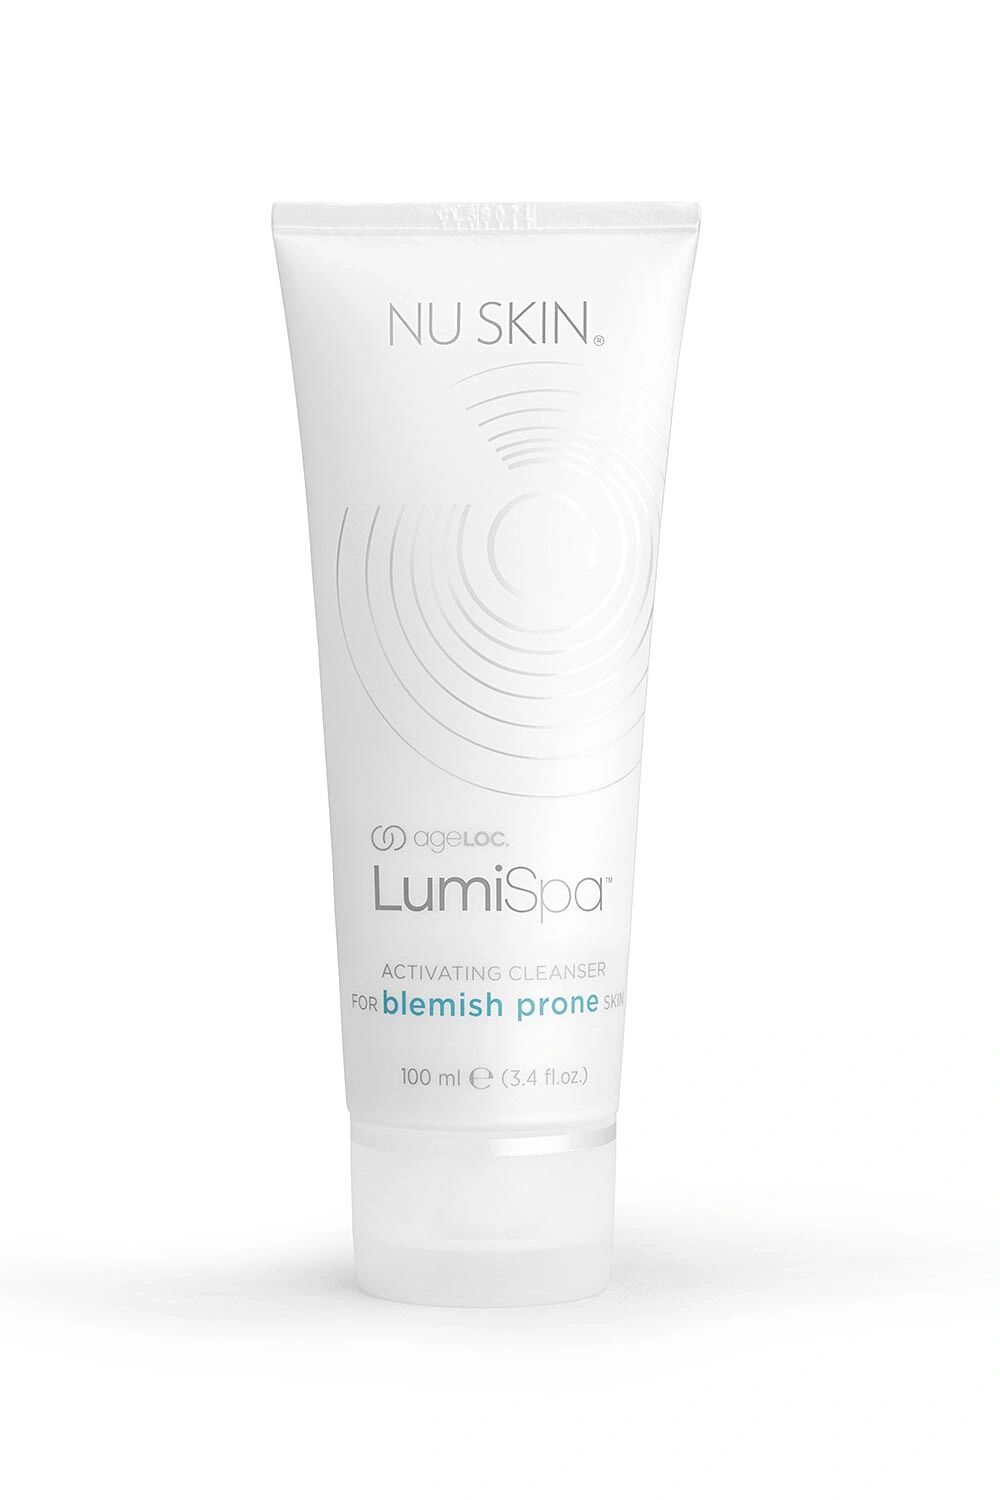 Nu Skin čisticí přípravek ageLOC® LumiSpa™ pro pokožku Náchylnou k vyrážkám 100ml